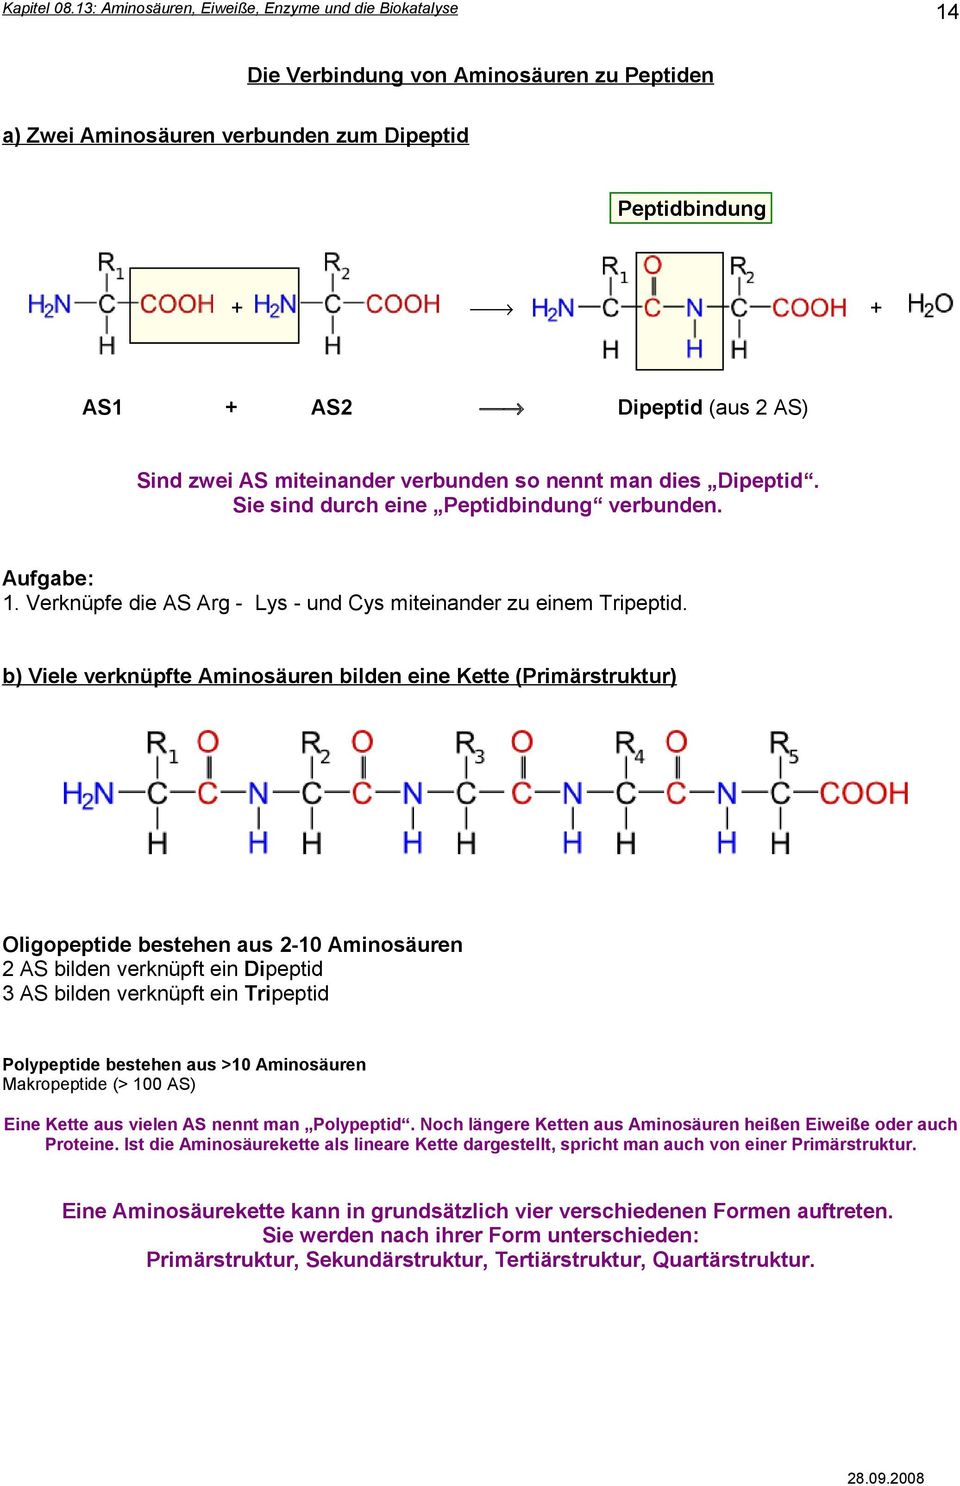 b) Viele verknüpfte Aminosäuren bilden eine Kette (Primärstruktur) Oligopeptide bestehen aus 2-10 Aminosäuren 2 AS bilden verknüpft ein Dipeptid 3 AS bilden verknüpft ein Tripeptid Polypeptide